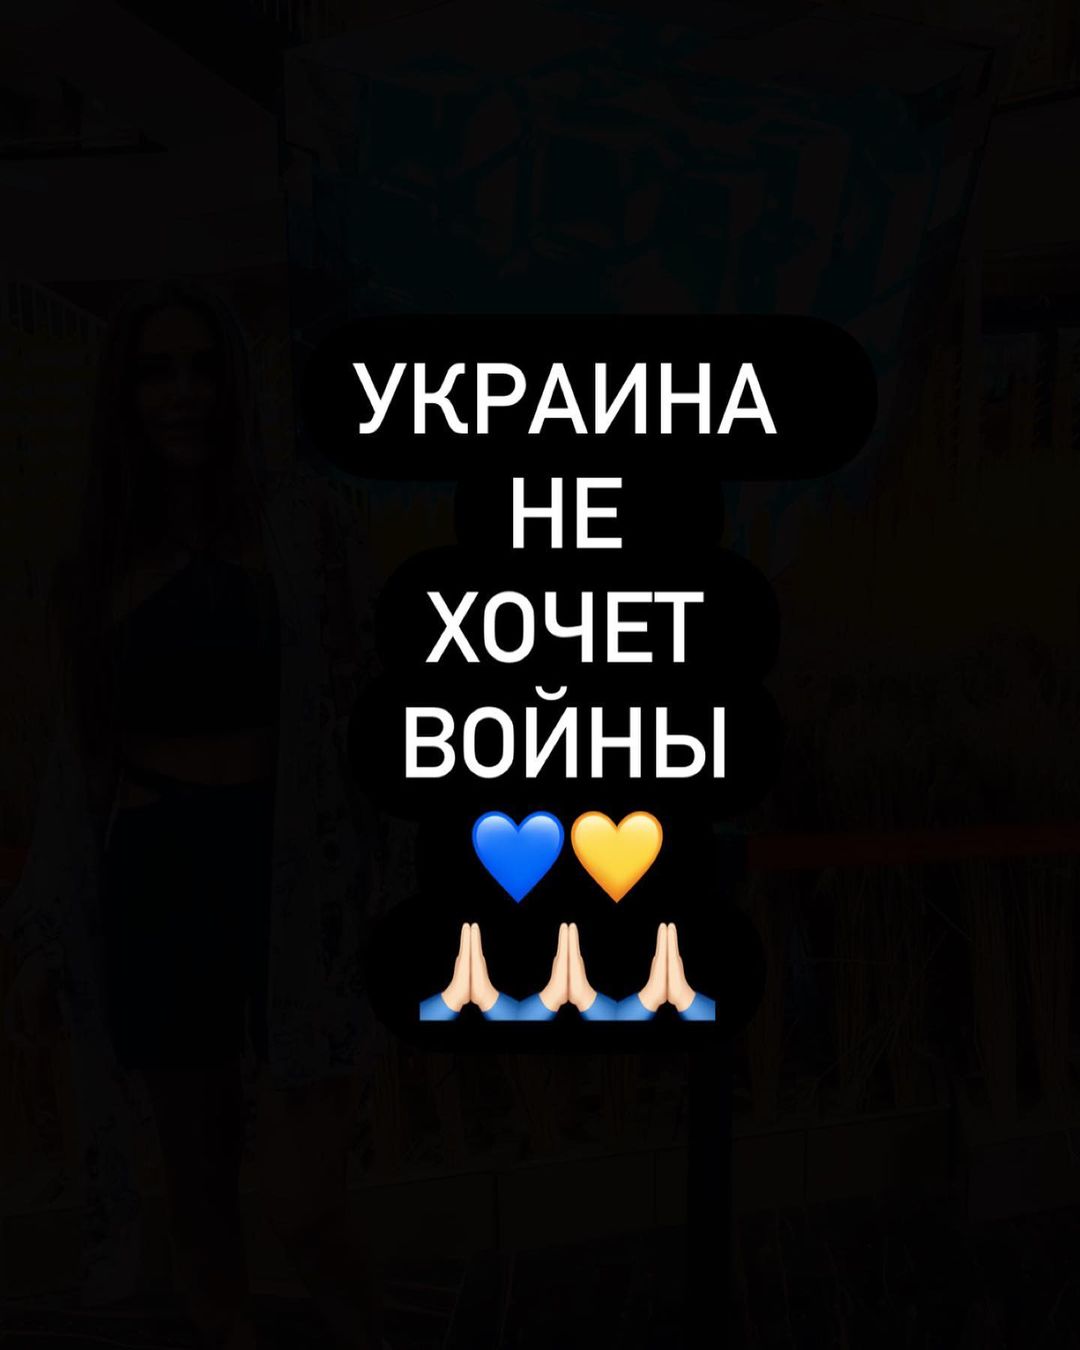 София Стужук говорит, что страшно всем, но надо держаться. Фото: Instagram.com/sofia_stuzhuk